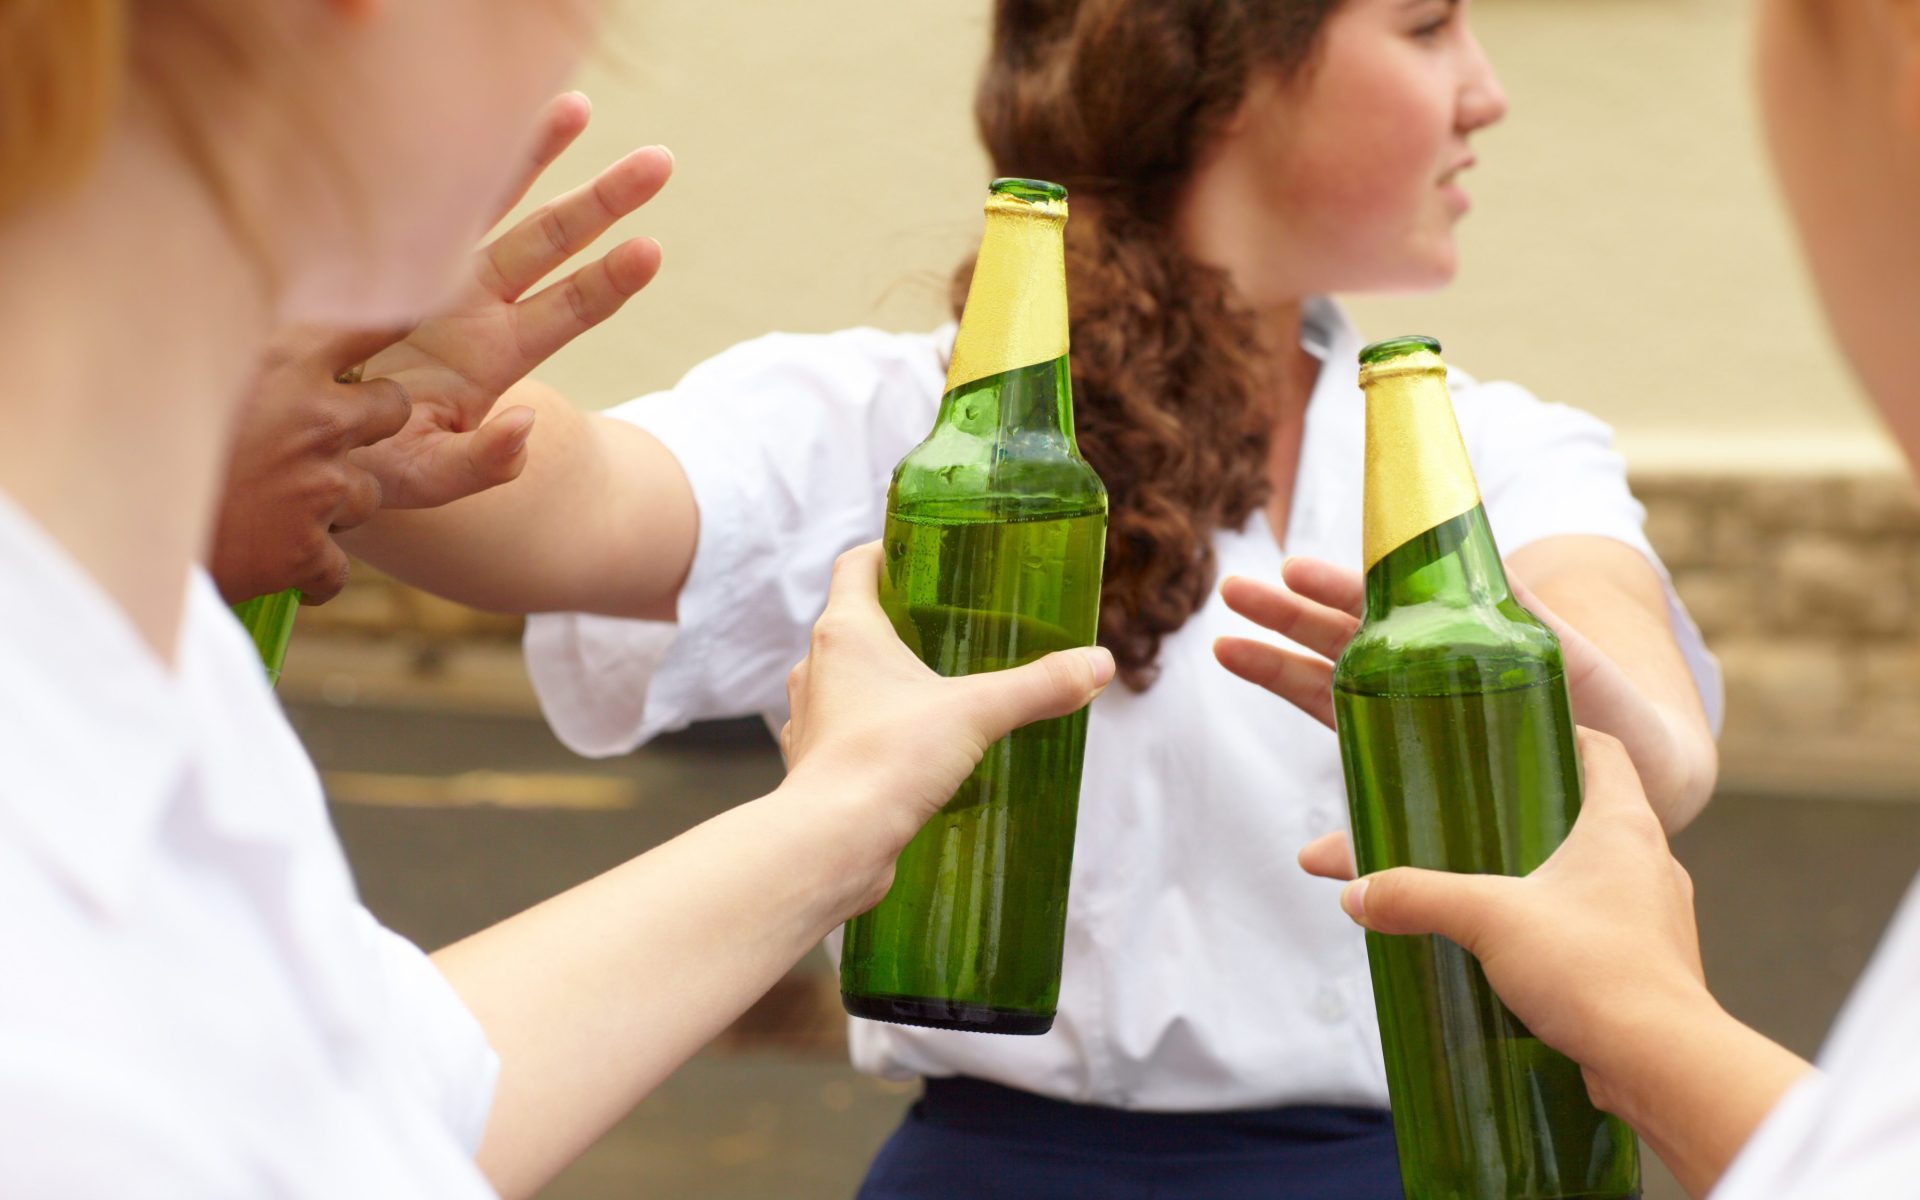 Teen being pressured into drinking by peers